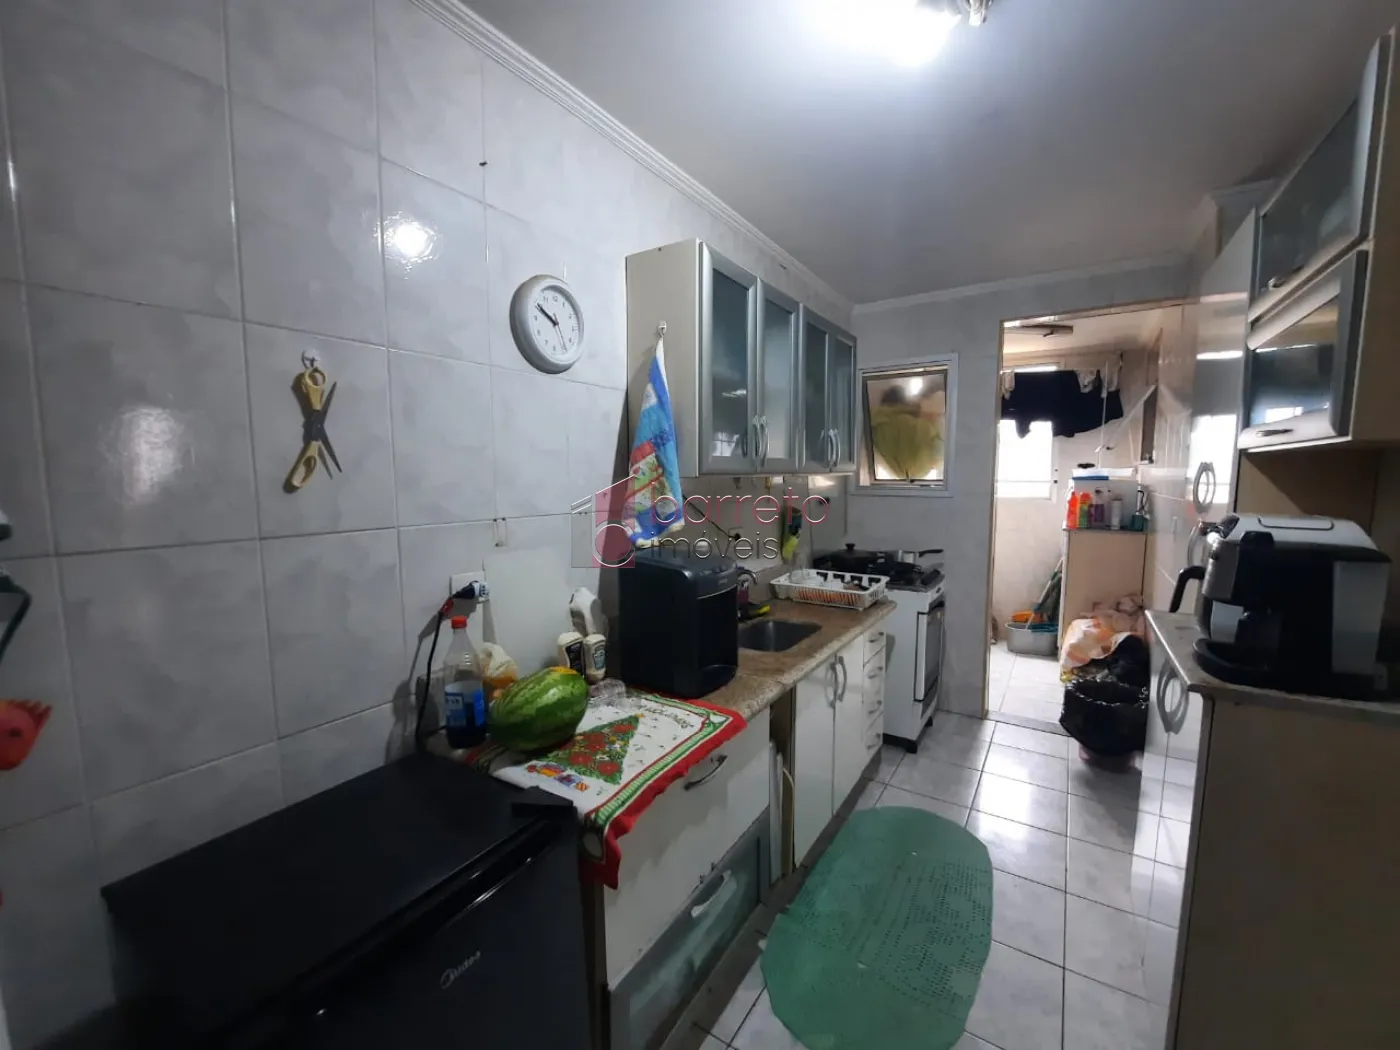 Comprar Apartamento / Padrão em Jundiaí R$ 480.000,00 - Foto 4